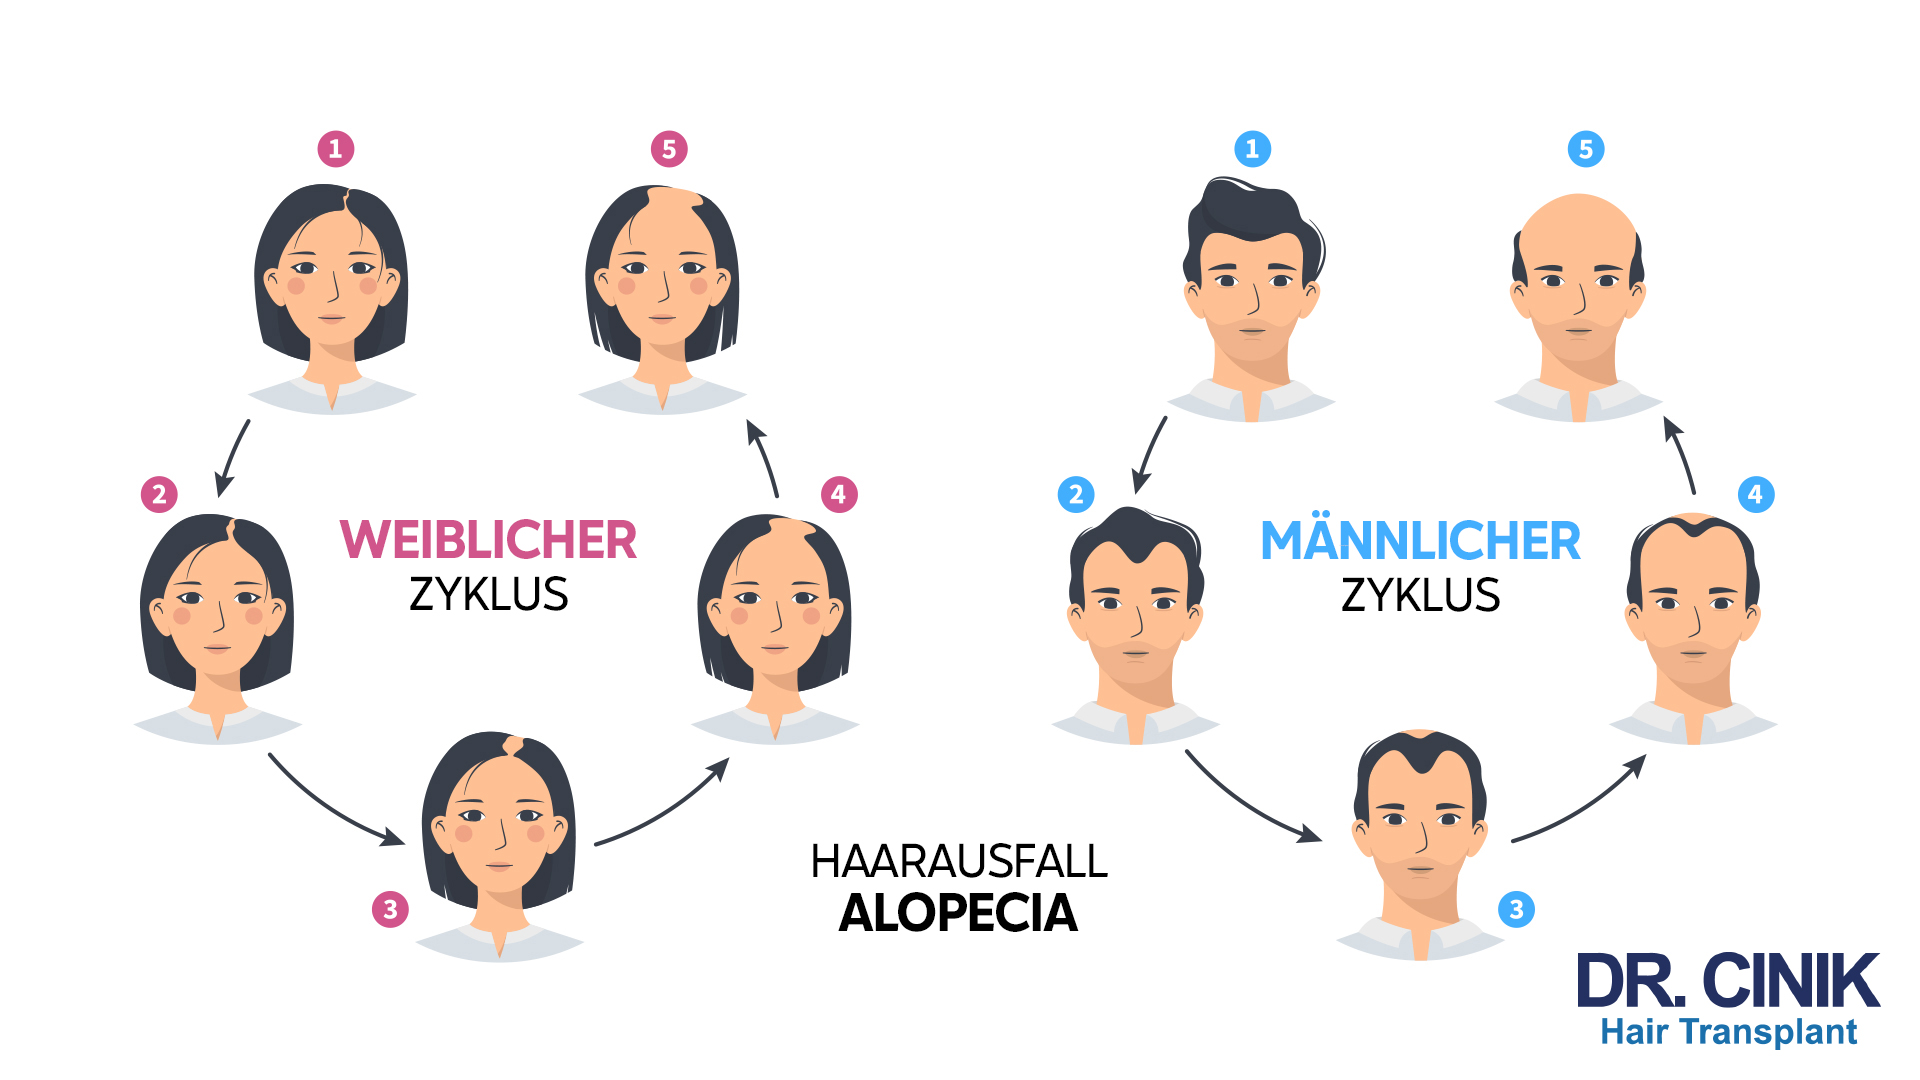 Auf der Grafik sind zwei Zyklen dargestellt: der "WEIBLICHER ZYKLUS" und der "MÄNNLICHER ZYKLUS". Im weiblichen Zyklus beginnt die Darstellung mit einer Frau mit vollen Haaren als Phase 1. Es folgt eine Frau mit leicht gelichteten Haaren in Phase 2, die dann in Phase 3 zu einer Frau mit sichtbarem Haarausfall führt. In Phase 4 wird eine Frau mit fortgeschrittenem Haarausfall gezeigt, und Phase 5 zeigt wieder die Frau aus Phase 1. Im männlichen Zyklus ist Phase 1 ein Mann mit vollen Haaren. In Phase 2 hat der Mann leicht gelichtete Haare, die in Phase 3 zu sichtbarem Haarausfall führen. Phase 4 zeigt einen Mann mit fortgeschrittenem Haarausfall, und Phase 5 zeigt wieder den Mann aus Phase 1. In der Mitte der Grafik steht "HAARAUSFALL ALOPECIA". Unten rechts ist das Logo "DR. CINIK Hair Transplant" abgebildet.